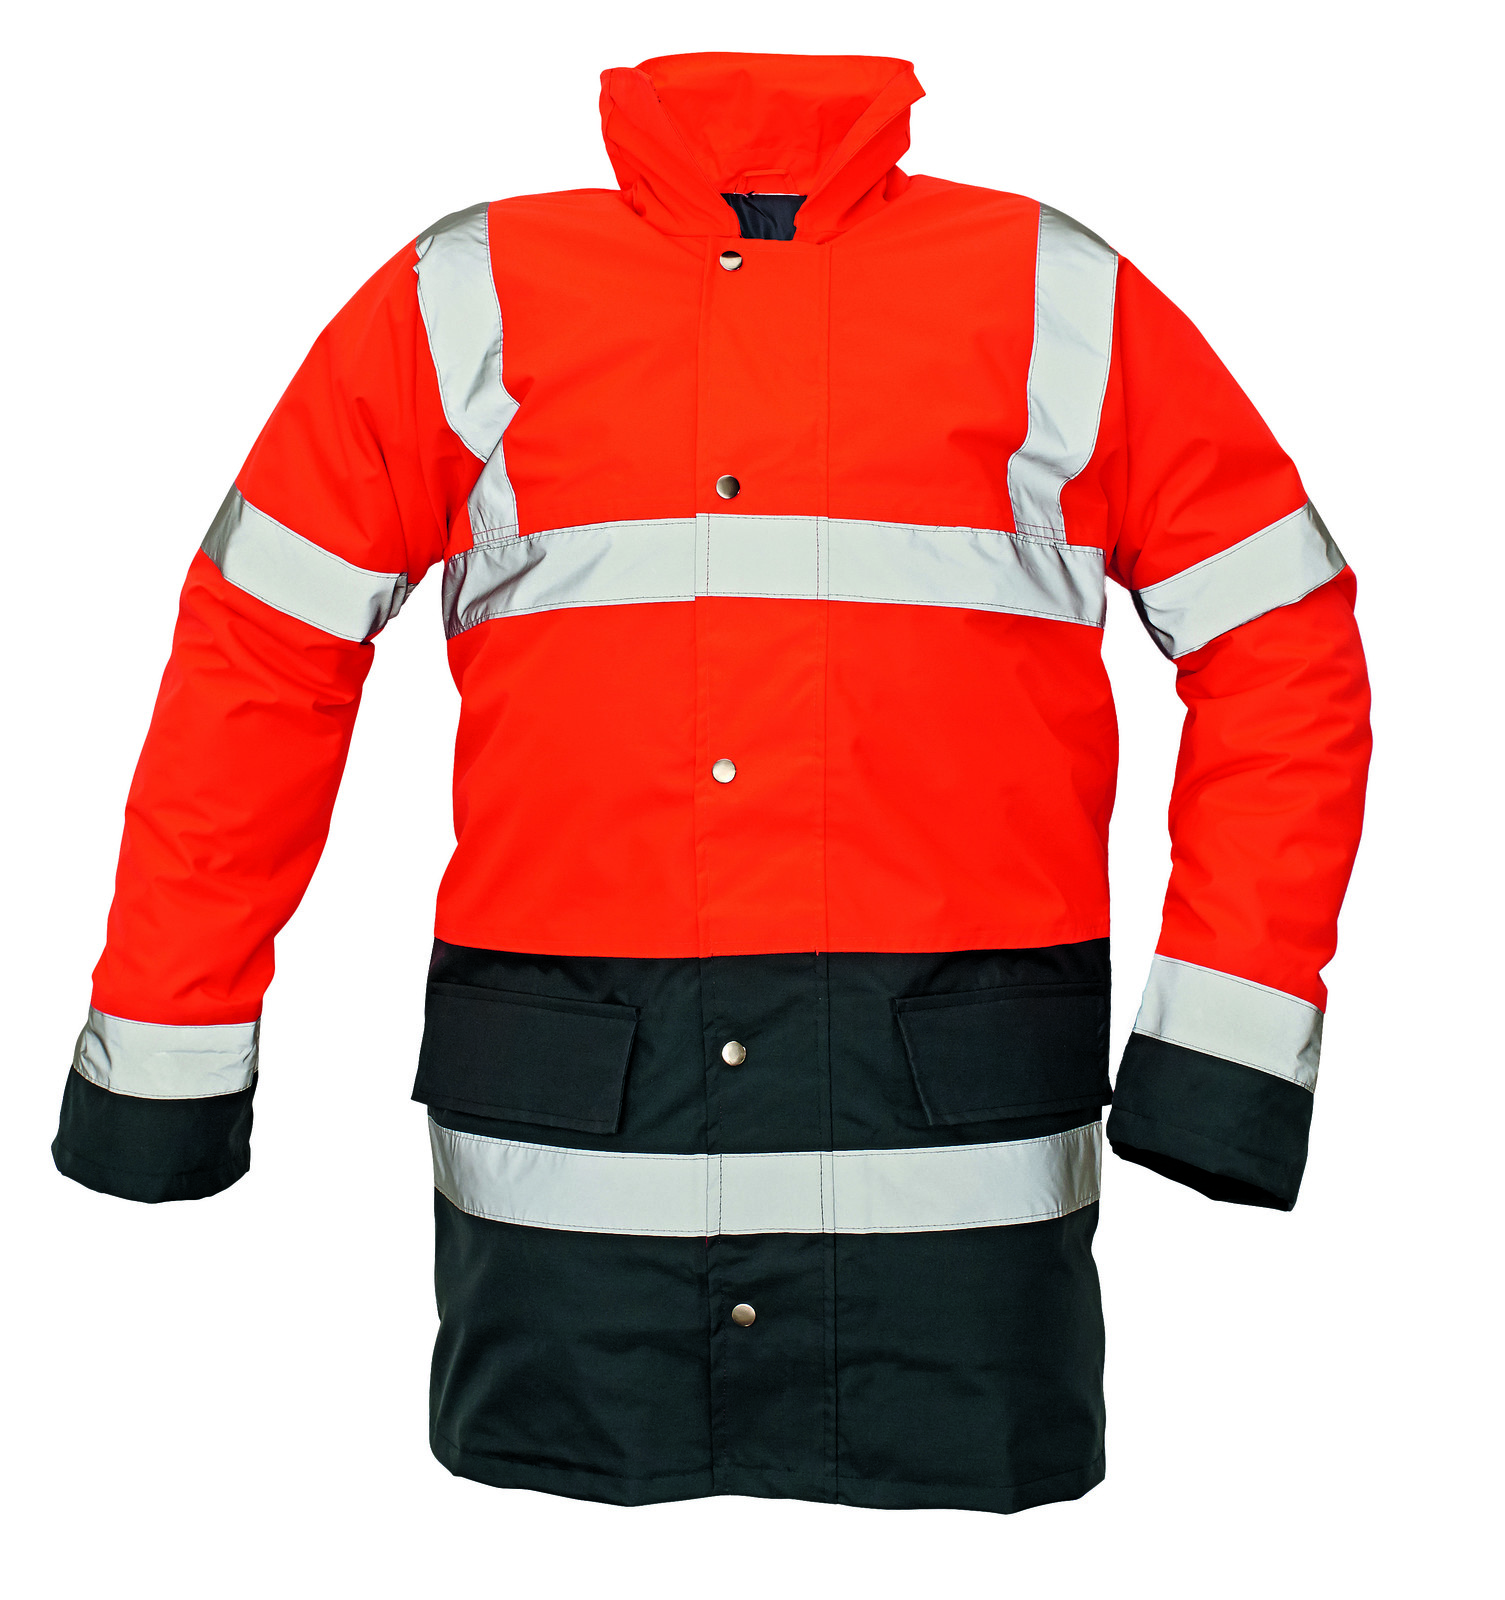 Ľahká zateplená reflexná bunda Sefton - veľkosť: XL, farba: červená/navy